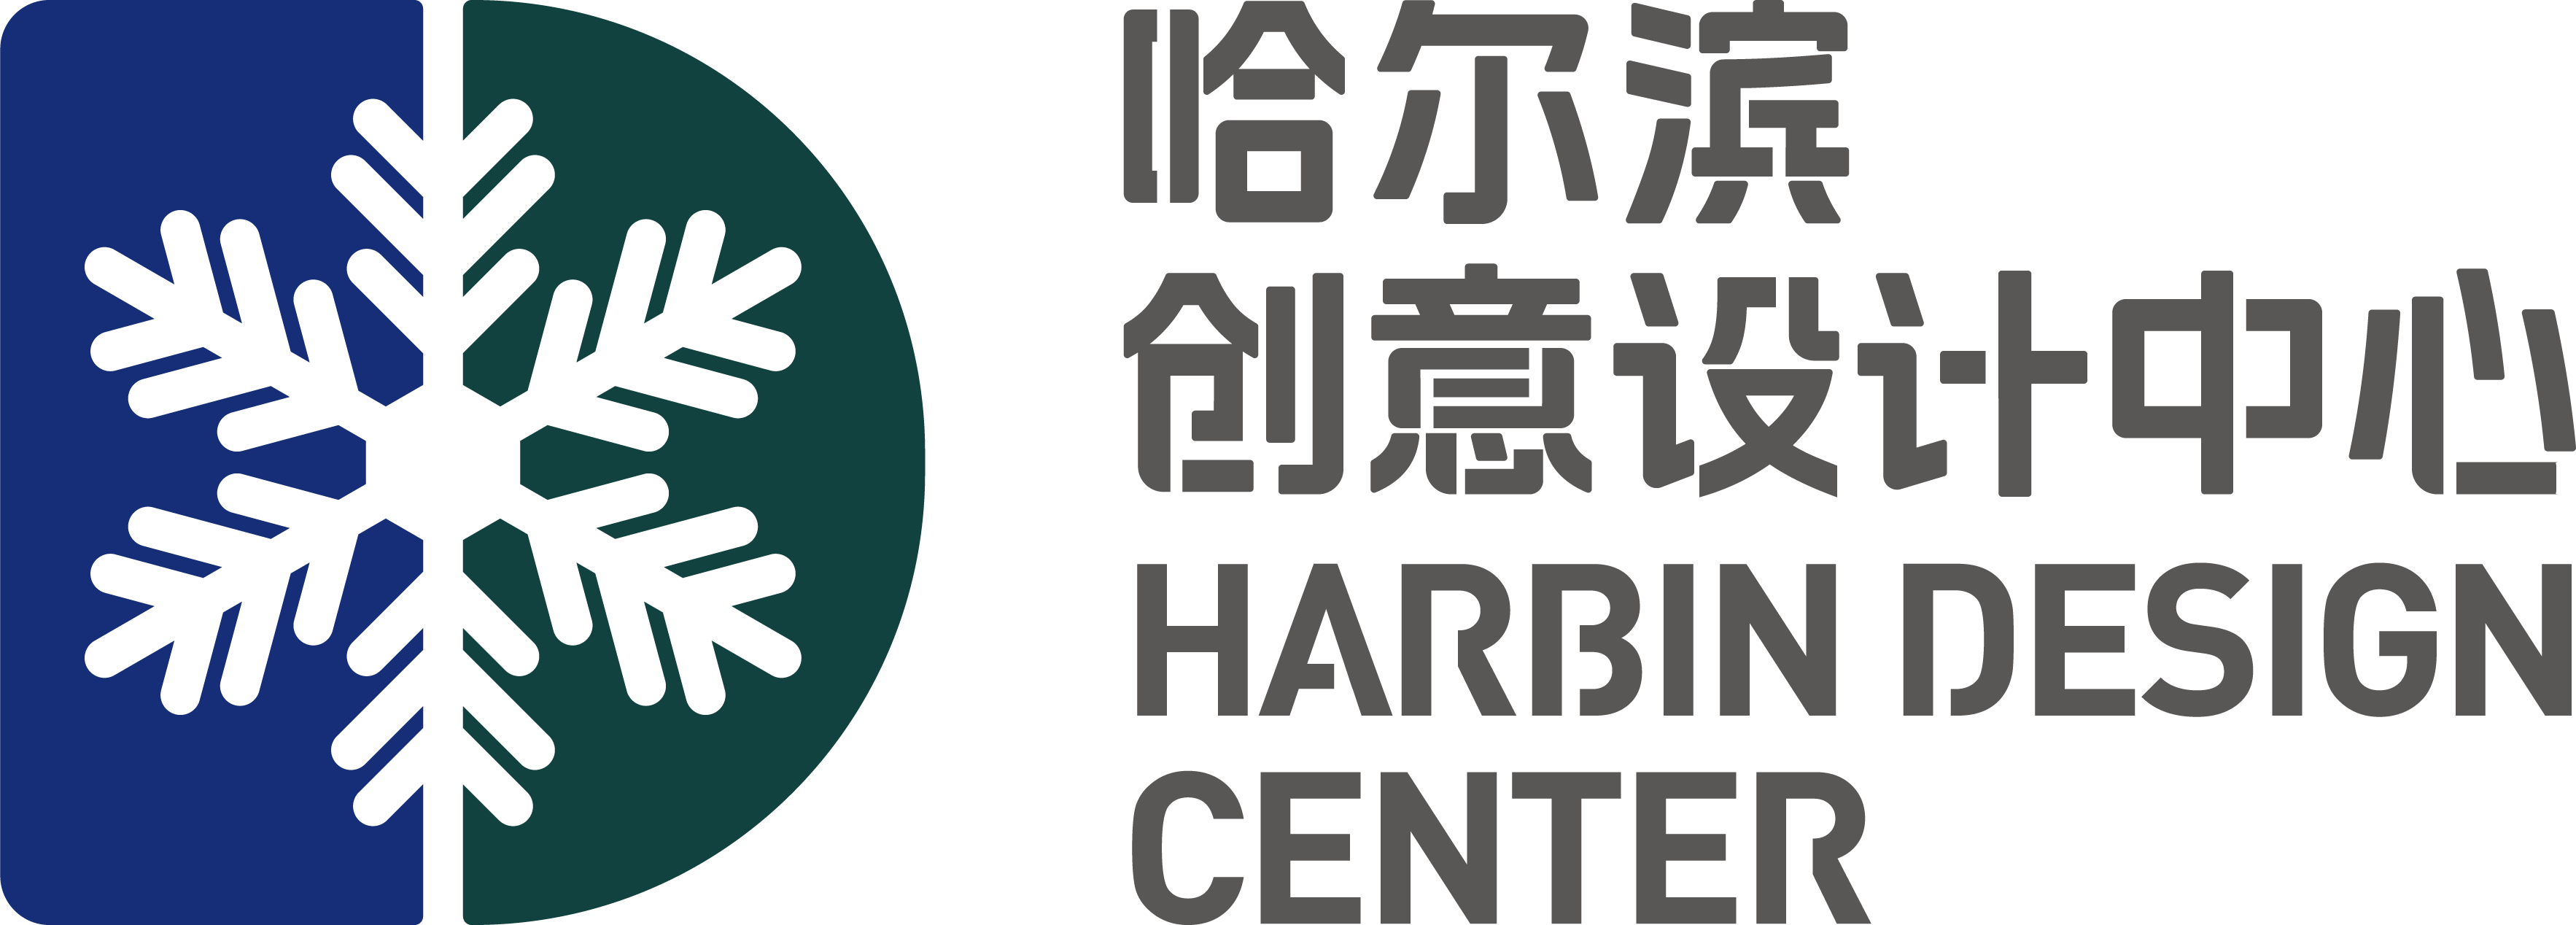 Harbin Design Center Logo